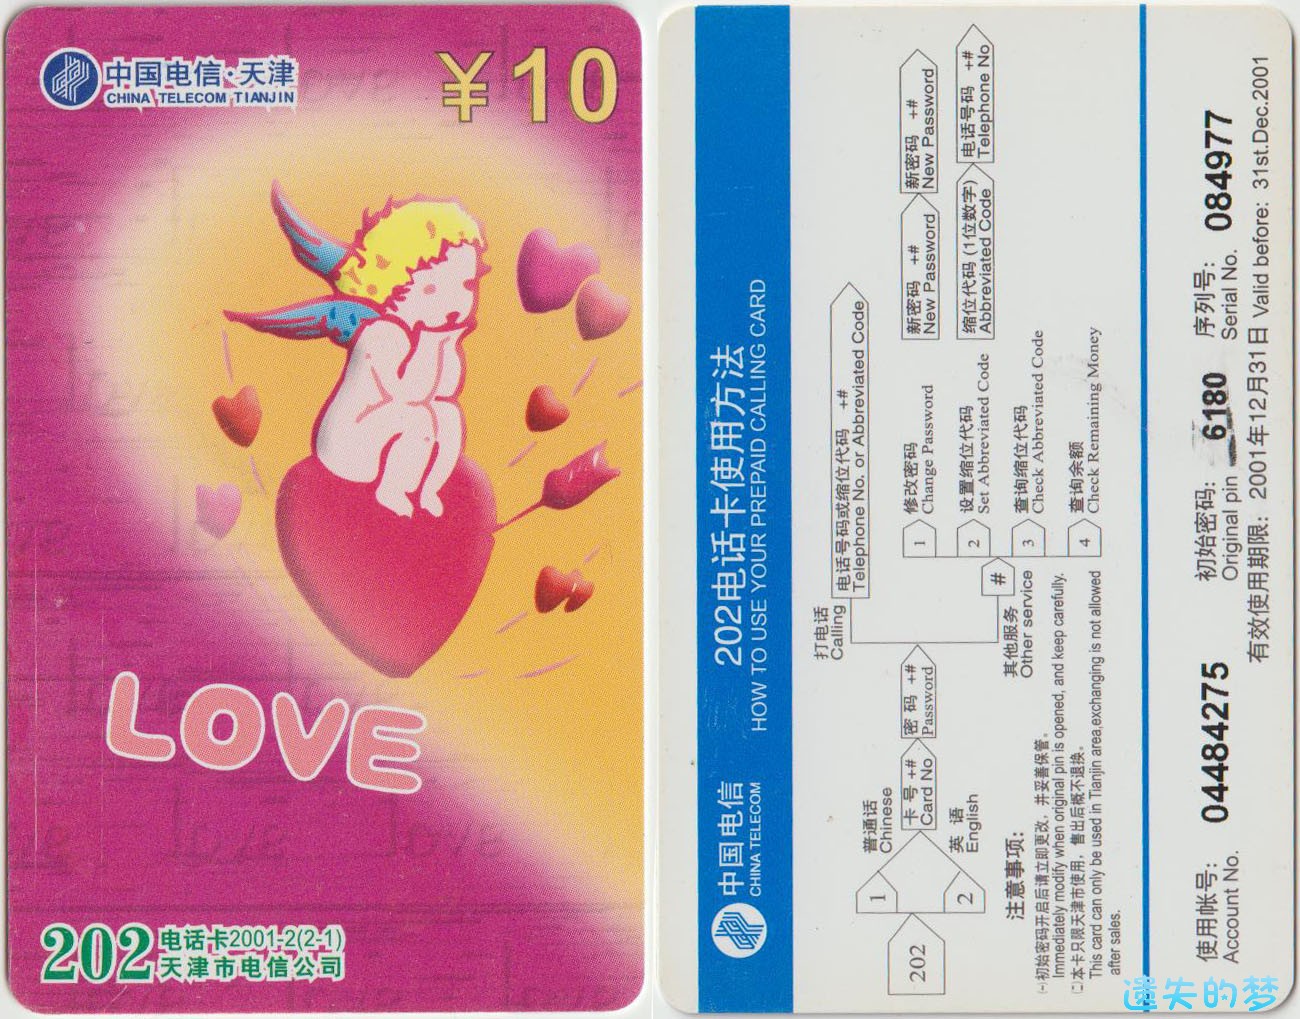 202电话卡2001-2(2-1).jpg